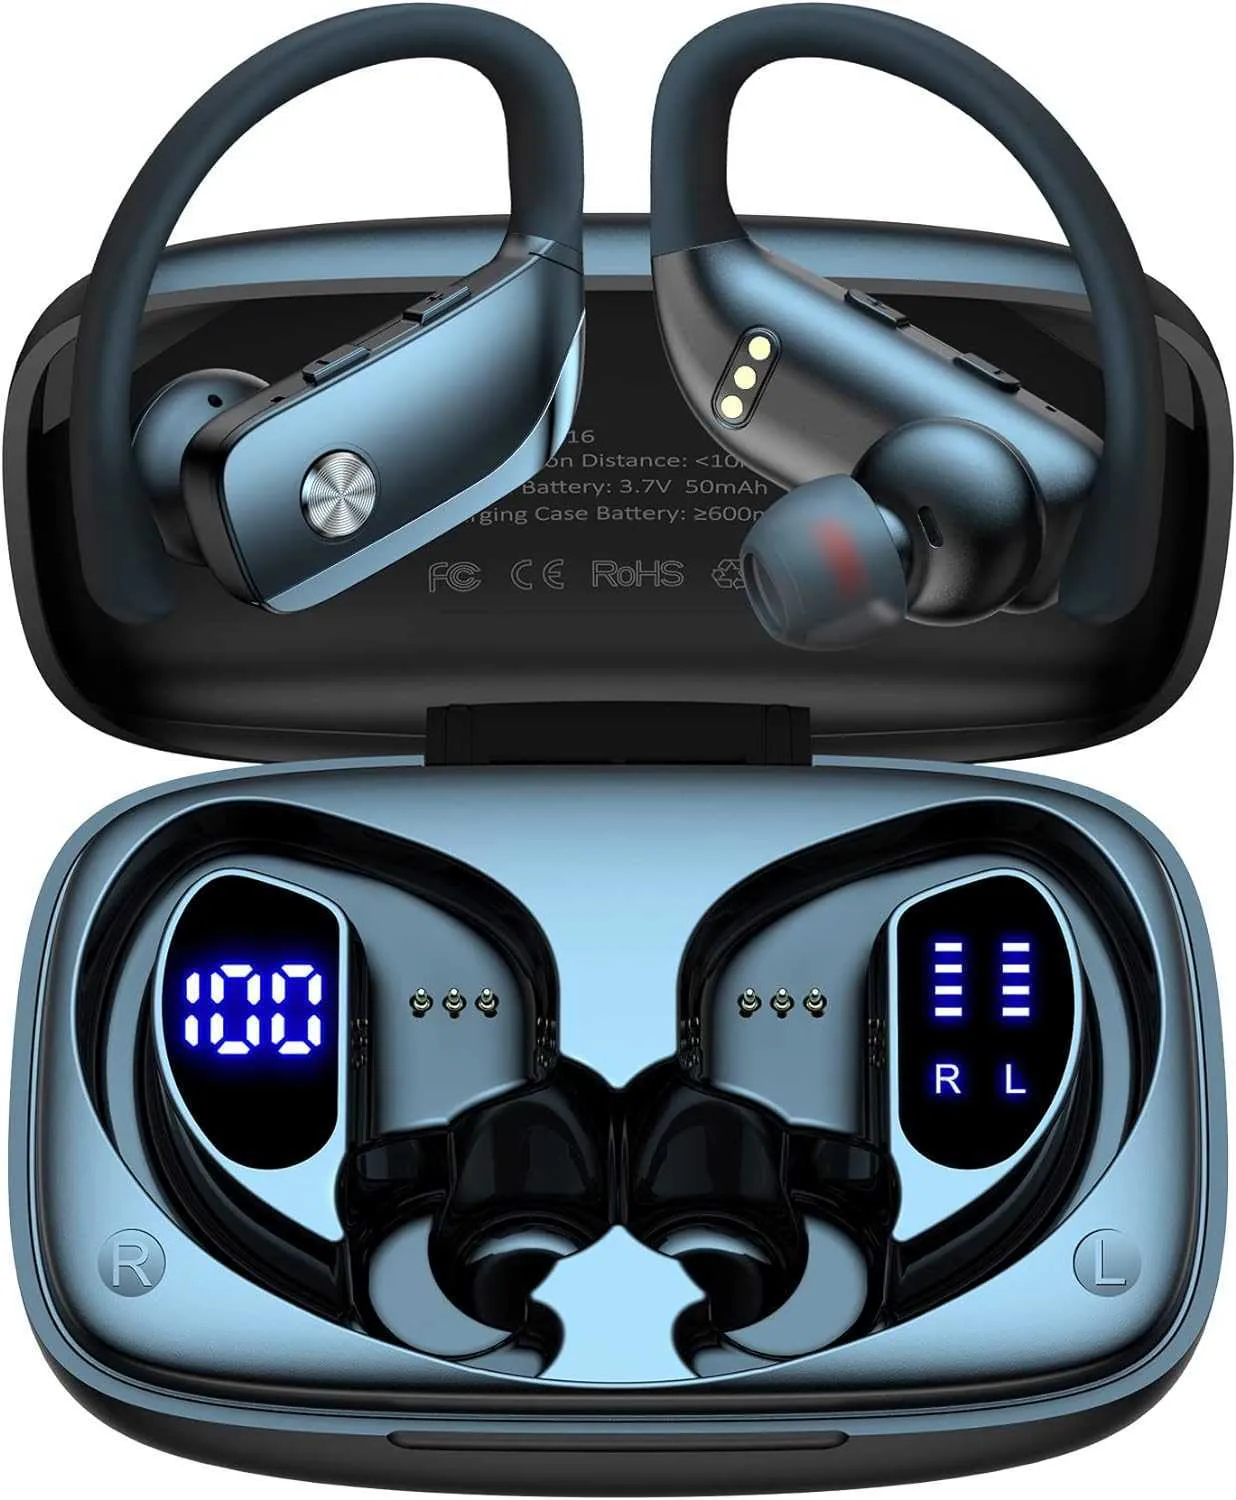 Écouteurs sans fil Bluetooth 48 heures de lecture, écouteurs de sport avec affichage LED, écouteurs supra-auriculaires avec crochets d'oreille, micro intégré, casque pour entraînement, noir